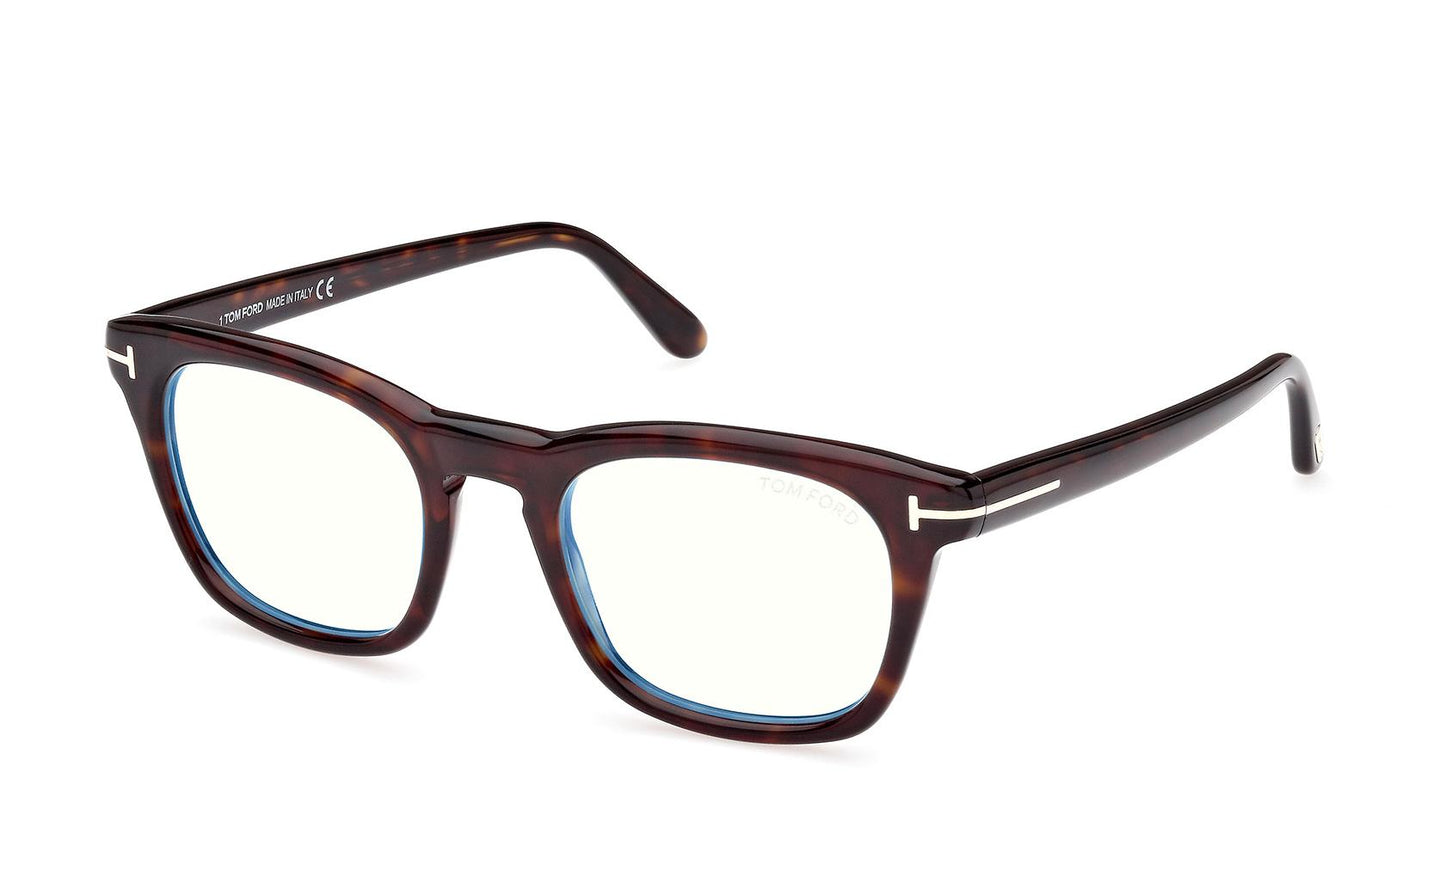 Tom Ford Eyeglasses FT5870/B 052